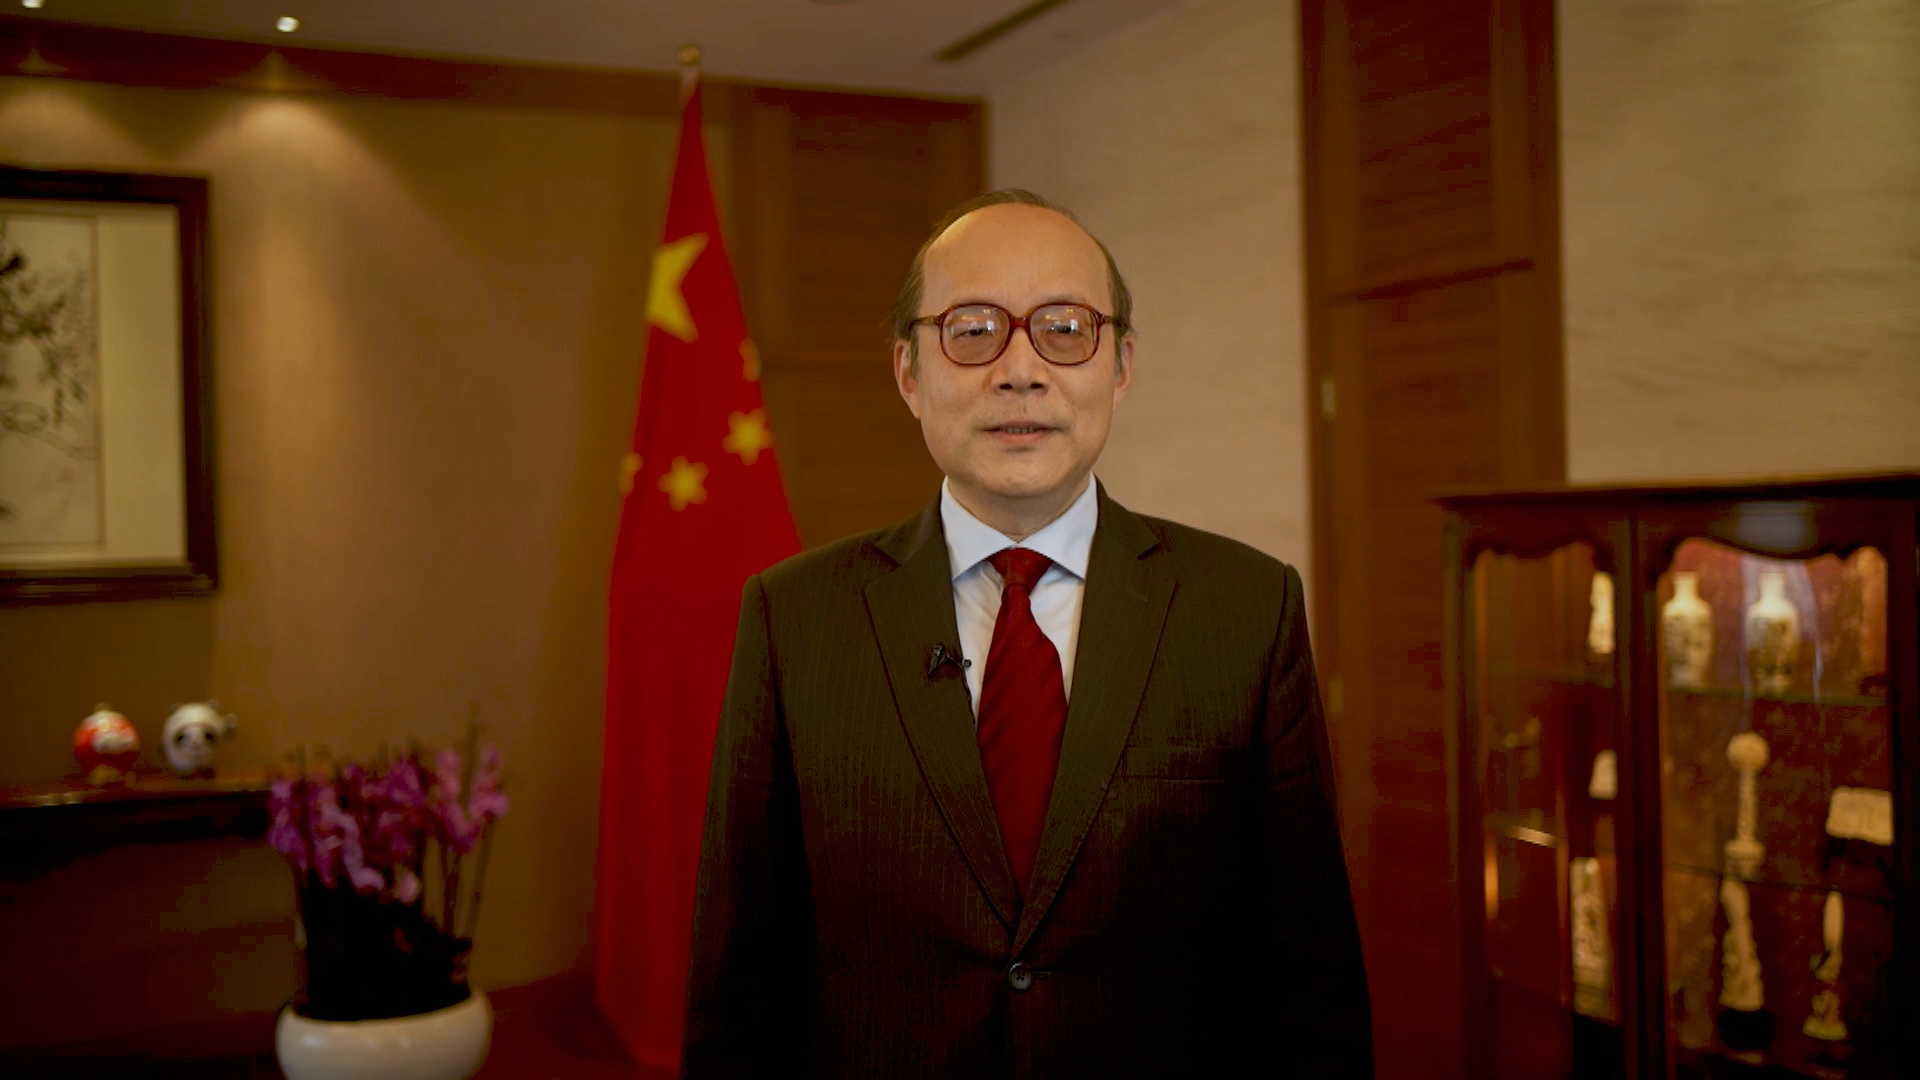 中国常驻联合国日内瓦办事处和瑞士其他国际组织代表陈旭大使在日内瓦发表致辞